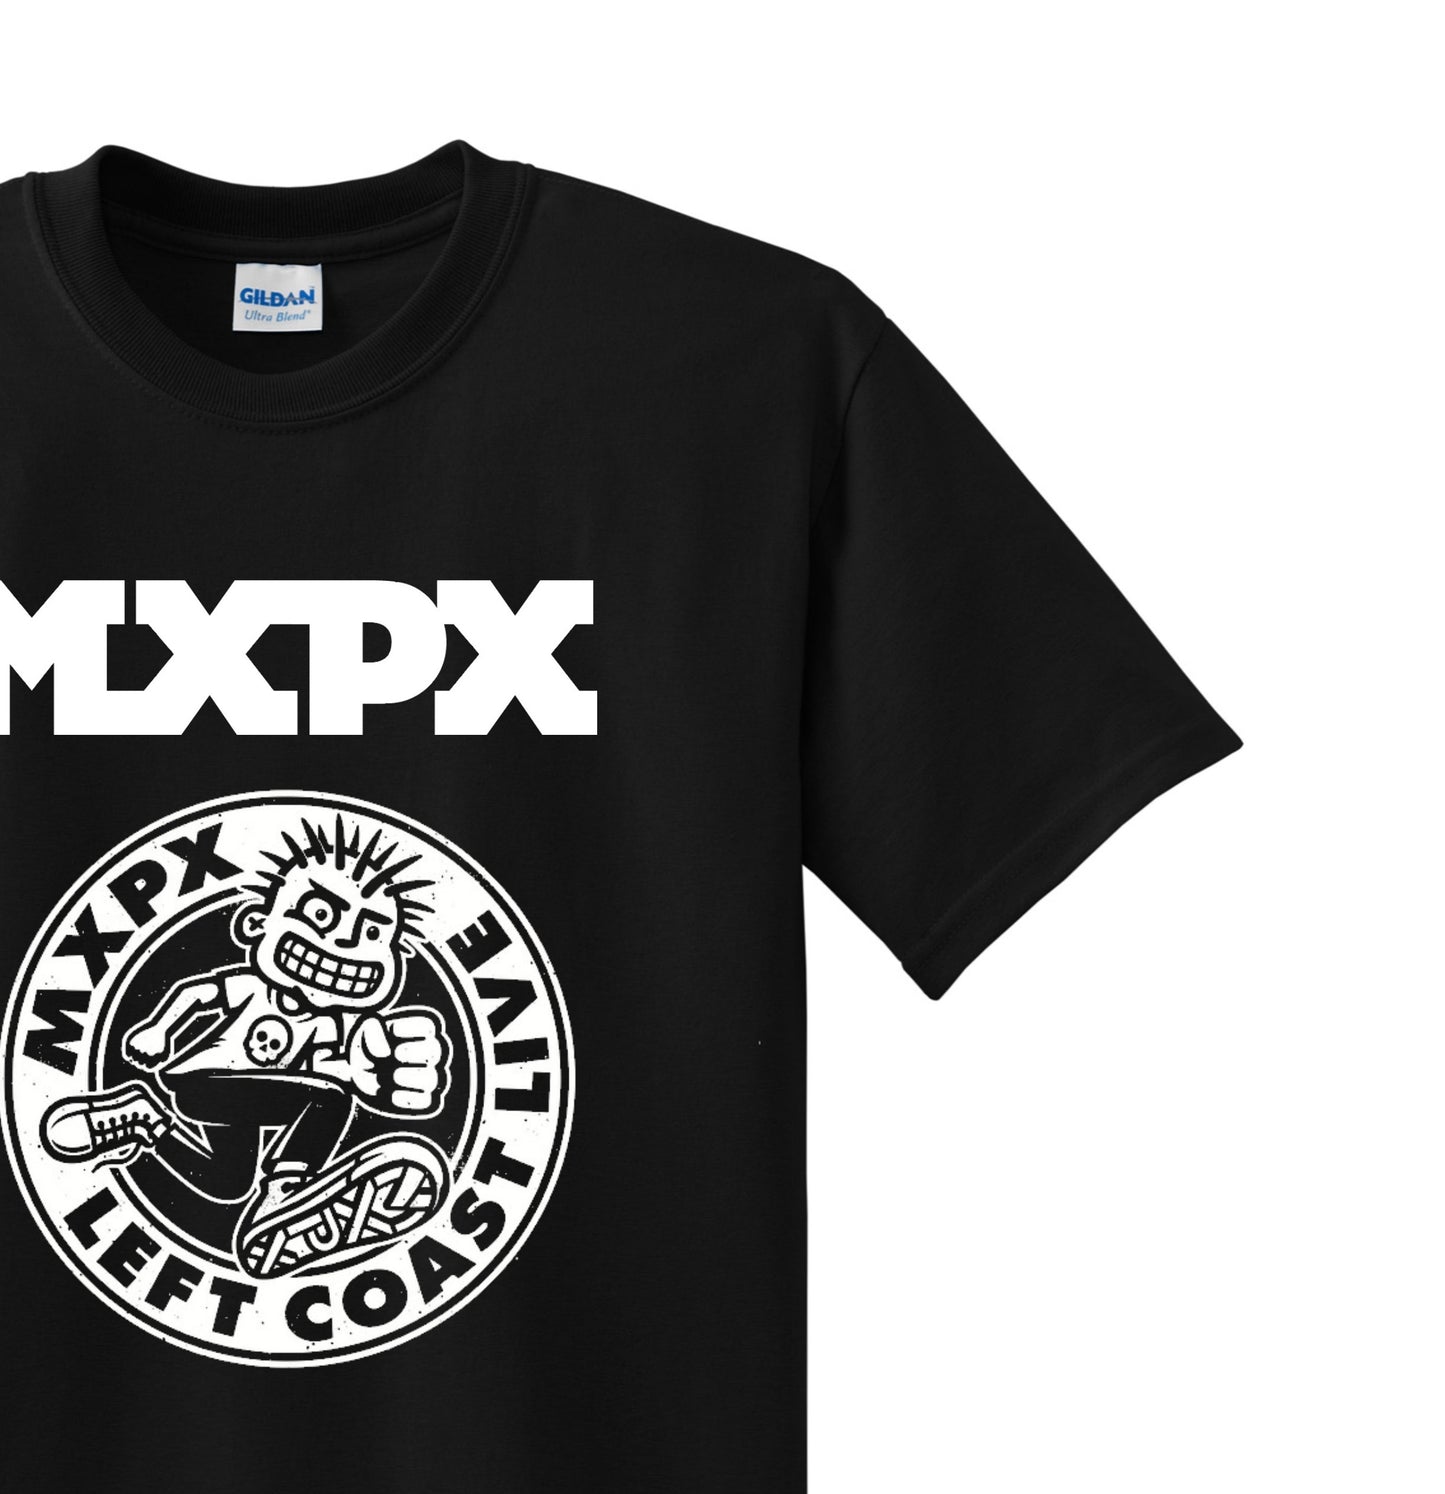 Radical Band  Men's Shirts - MXPX  (Black)